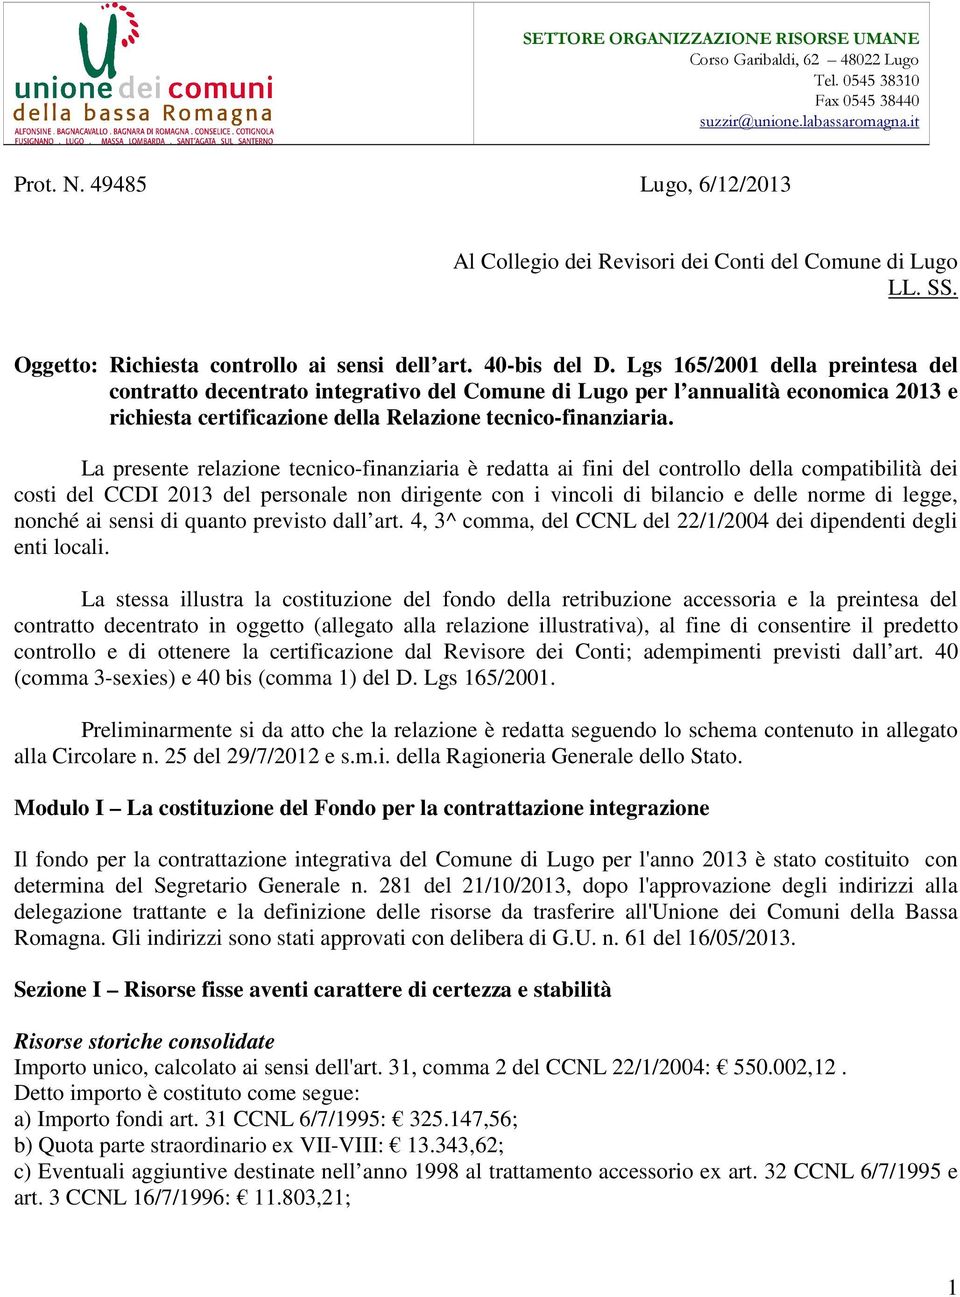 Lgs 165/2001 della preintesa del contratto decentrato integrativo del Comune di Lugo per l annualità economica 2013 e richiesta certificazione della Relazione tecnico-finanziaria.